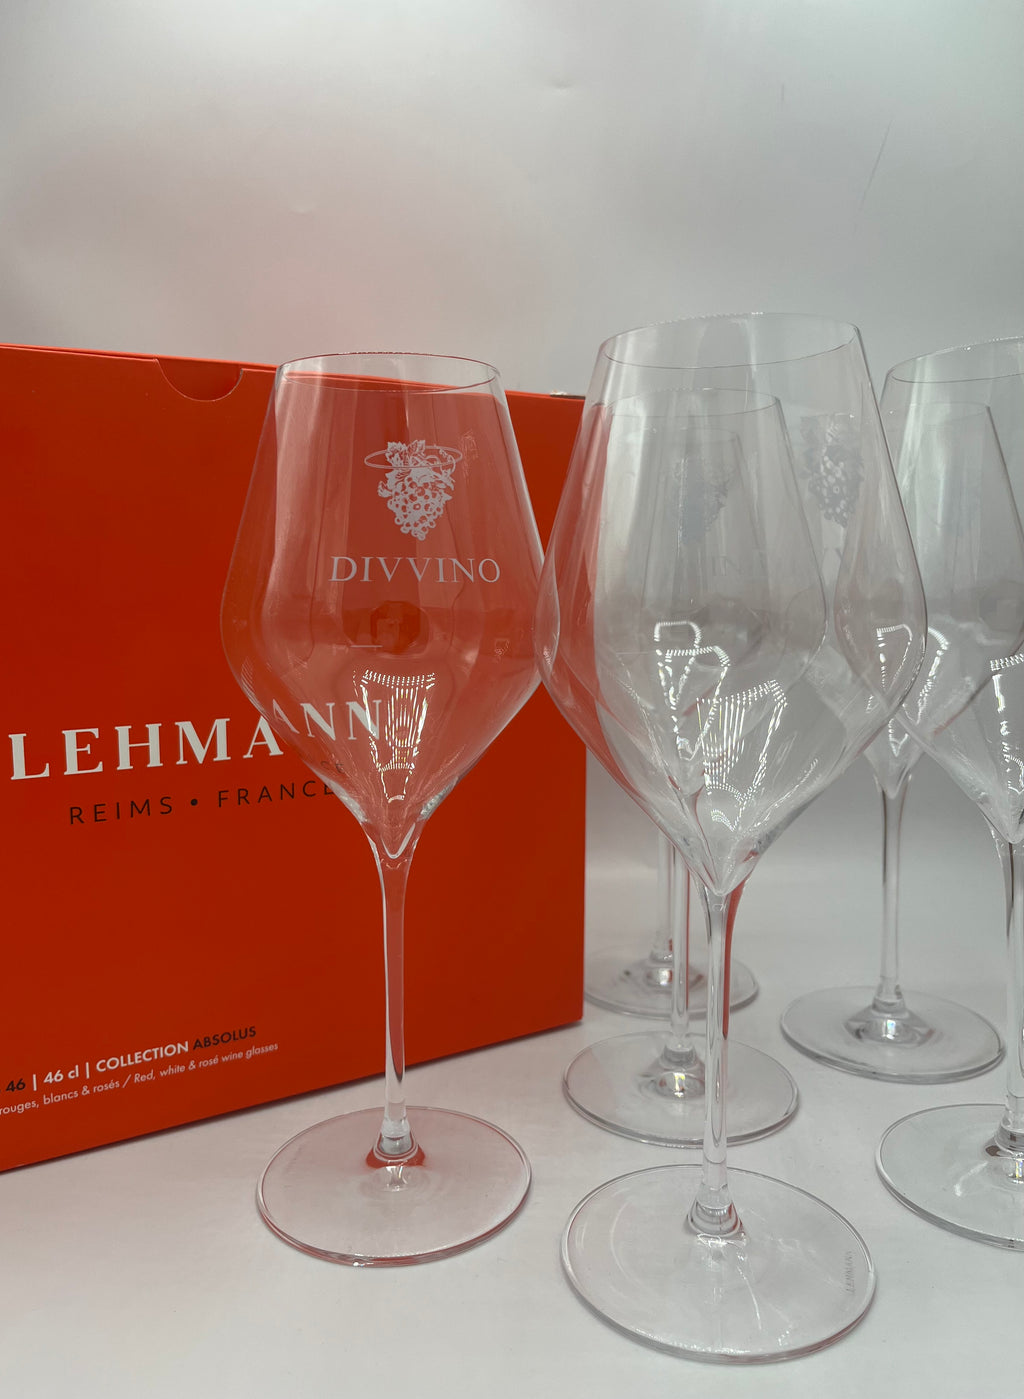 Conjunto de 6 taças de vinho Divvino Paris - Lehmann